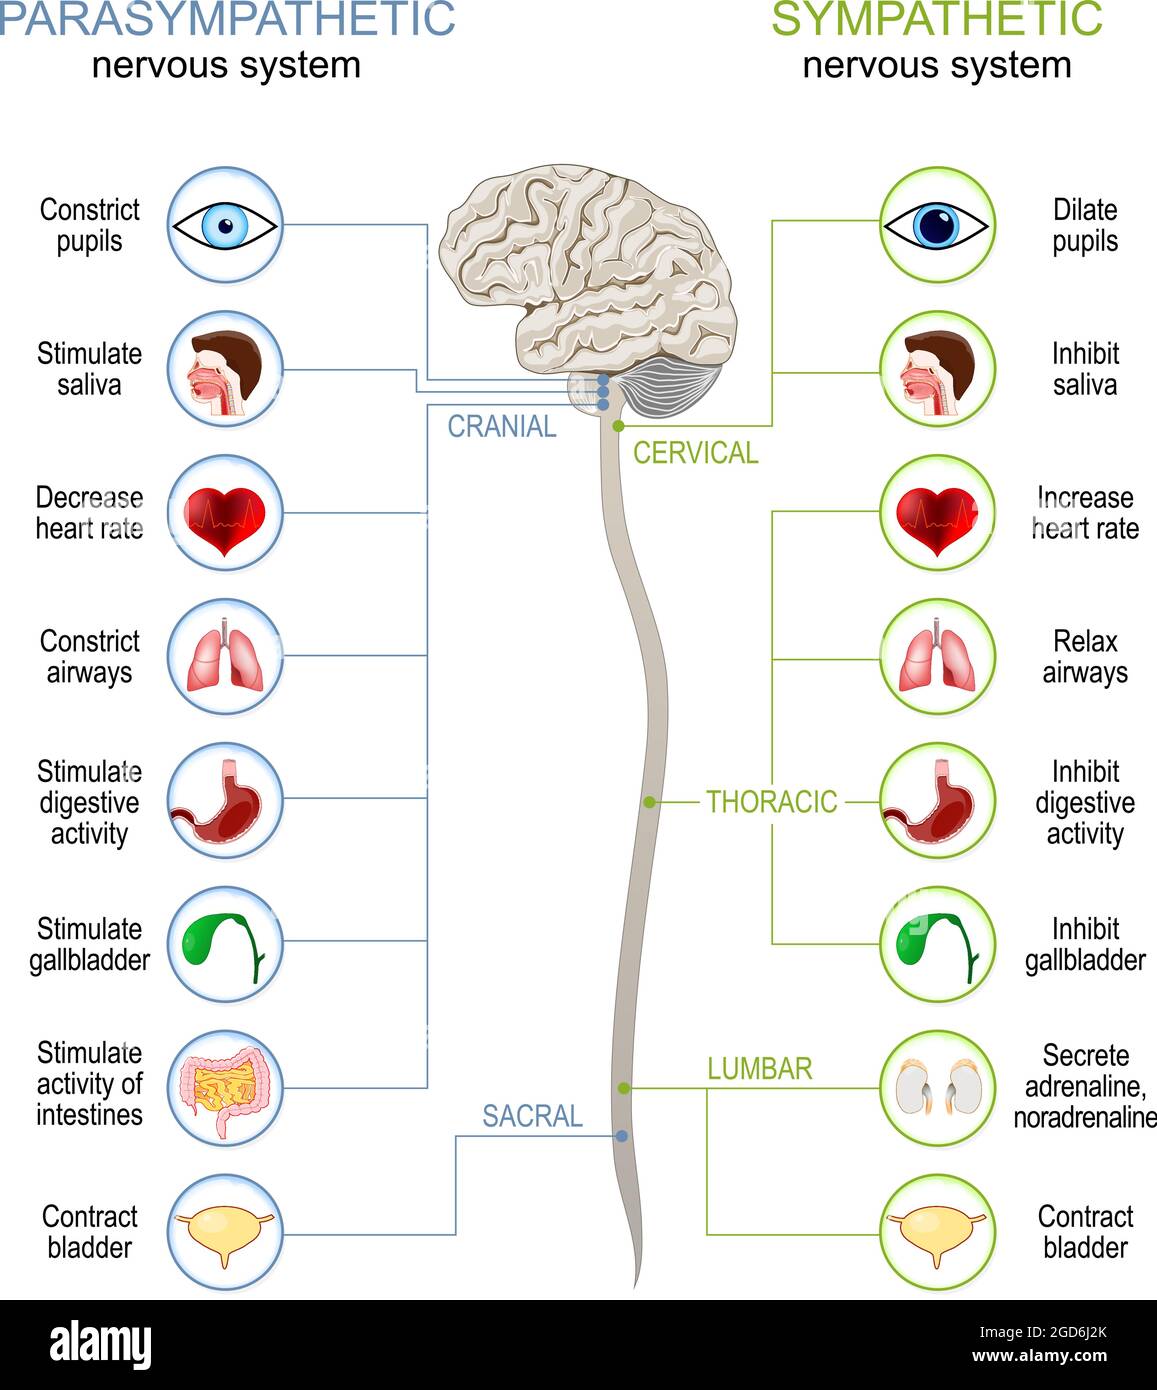 Système nerveux sympathique et parasympathique. Différence. Schéma avec les organes internes connectés, le cerveau et la moelle épinière. Illustration vectorielle Illustration de Vecteur